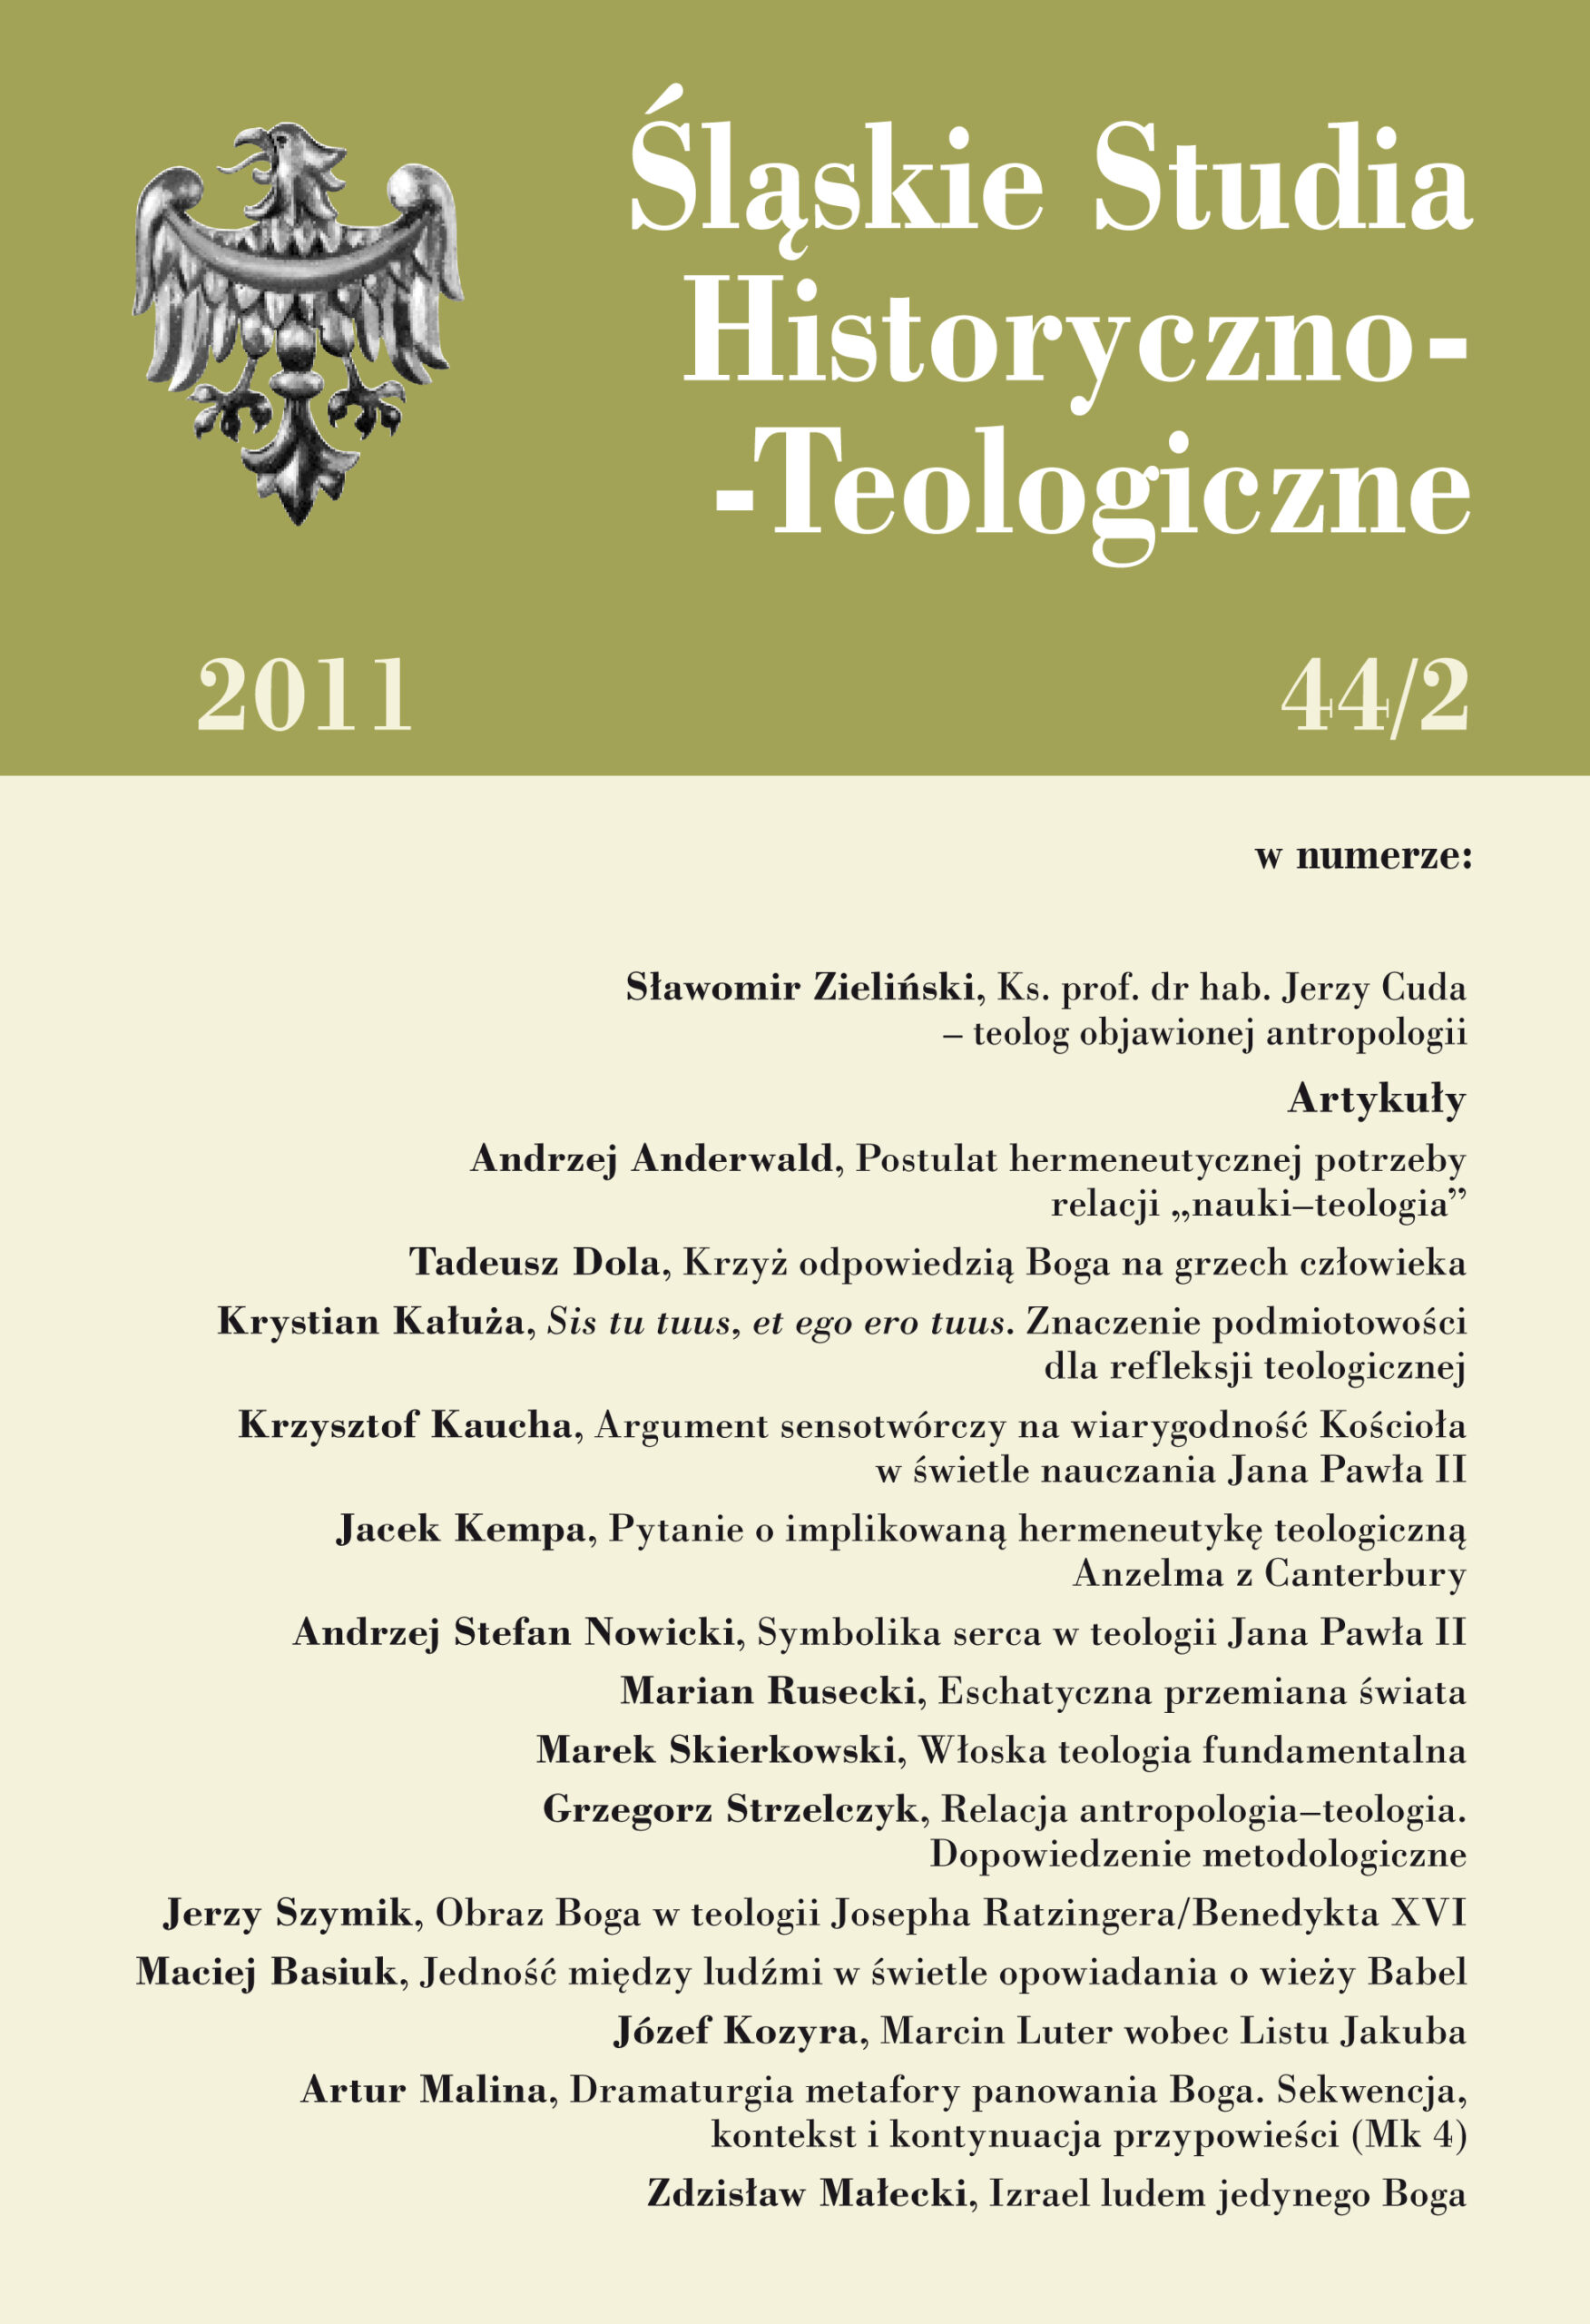 Śląskie Studia Historyczno-Teologiczne 44/2 (2011)